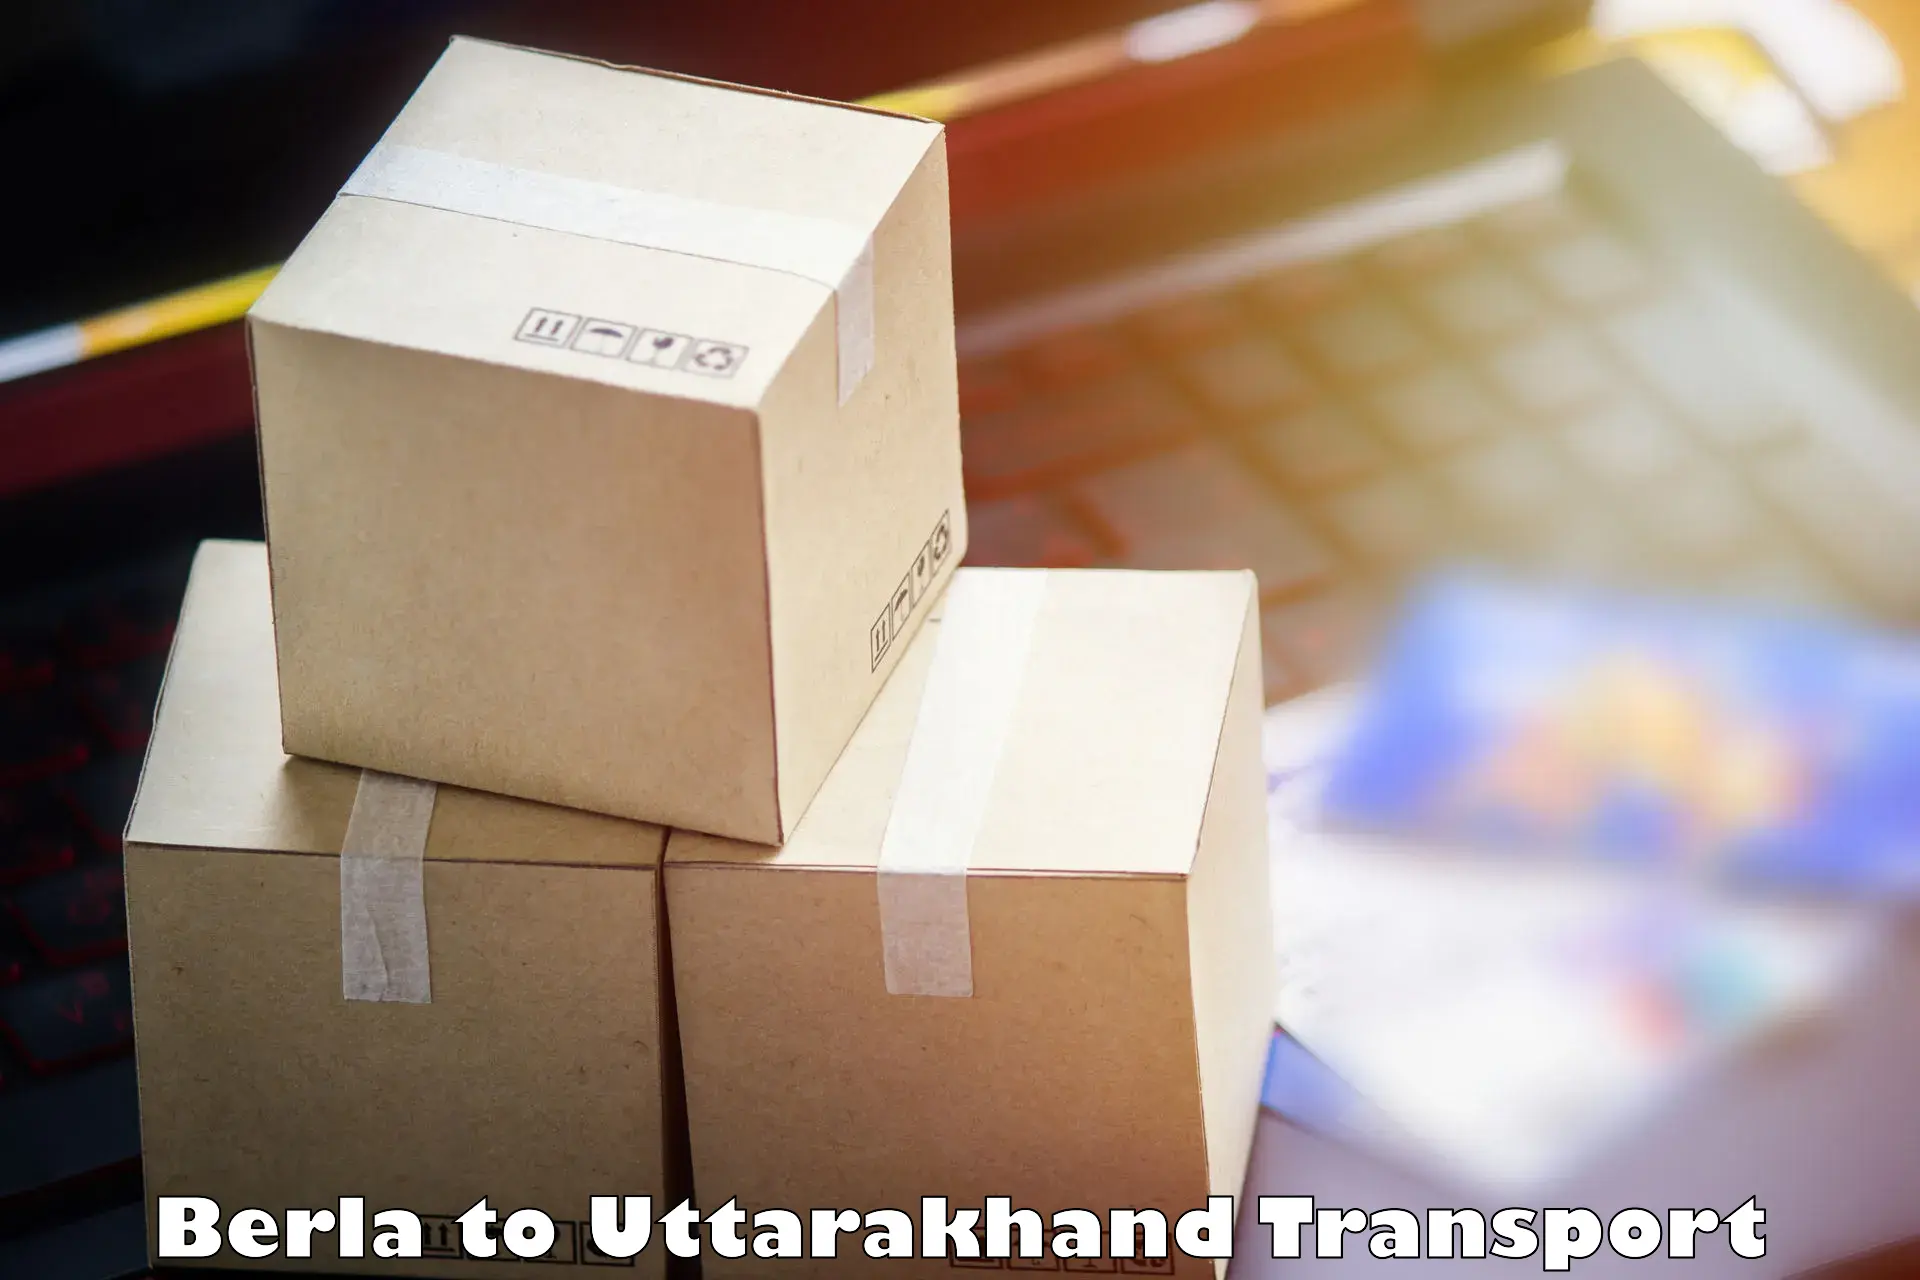 Transport services Berla to Uttarakhand